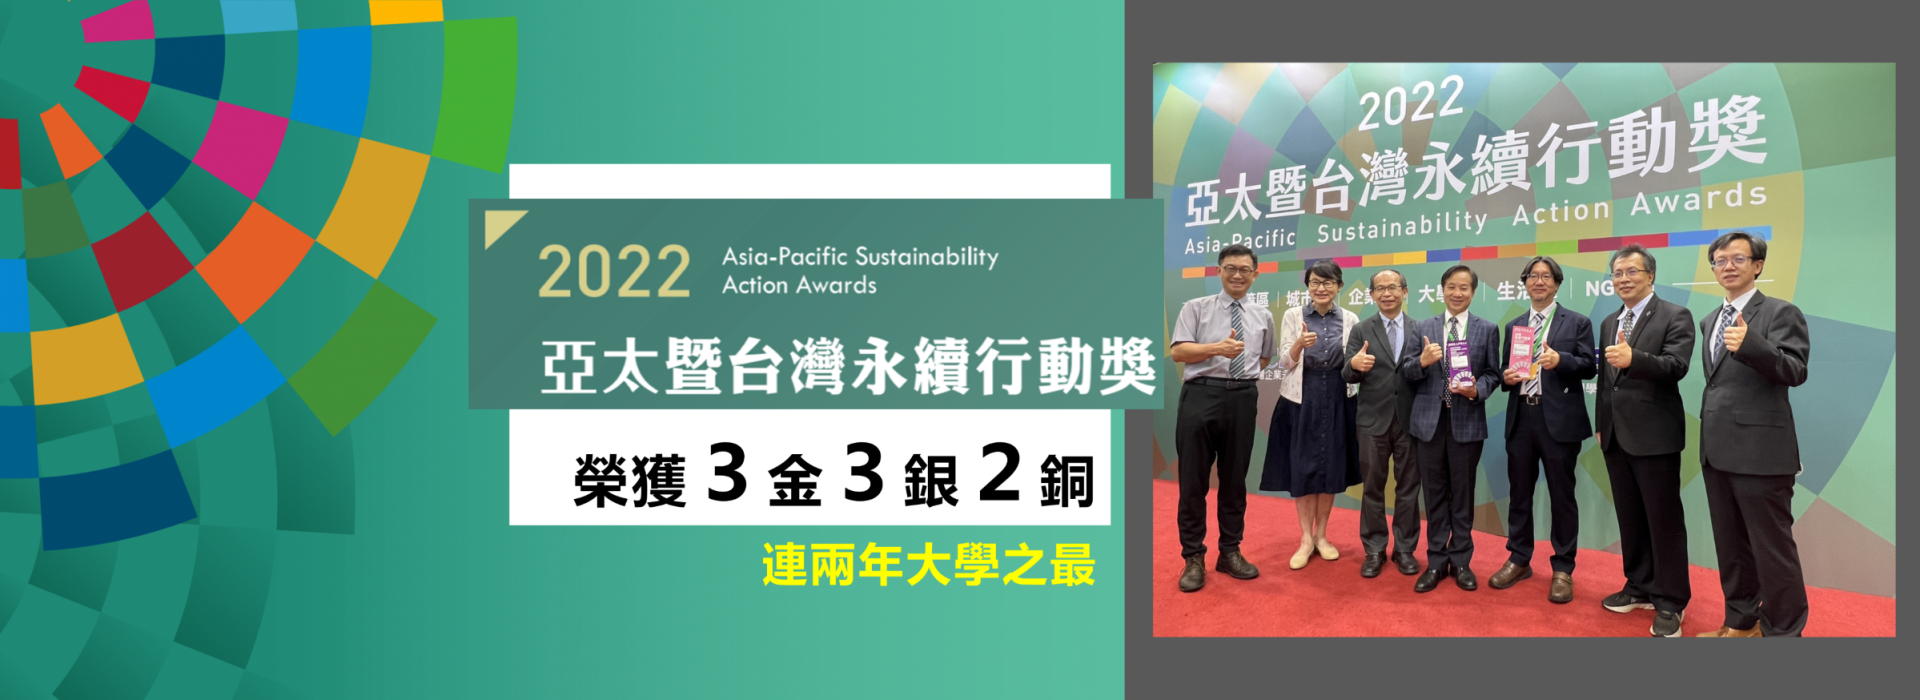 2022年亞太暨台灣永續行動獎頒獎  東海大學榮獲三金三銀二銅  連兩年大學之最